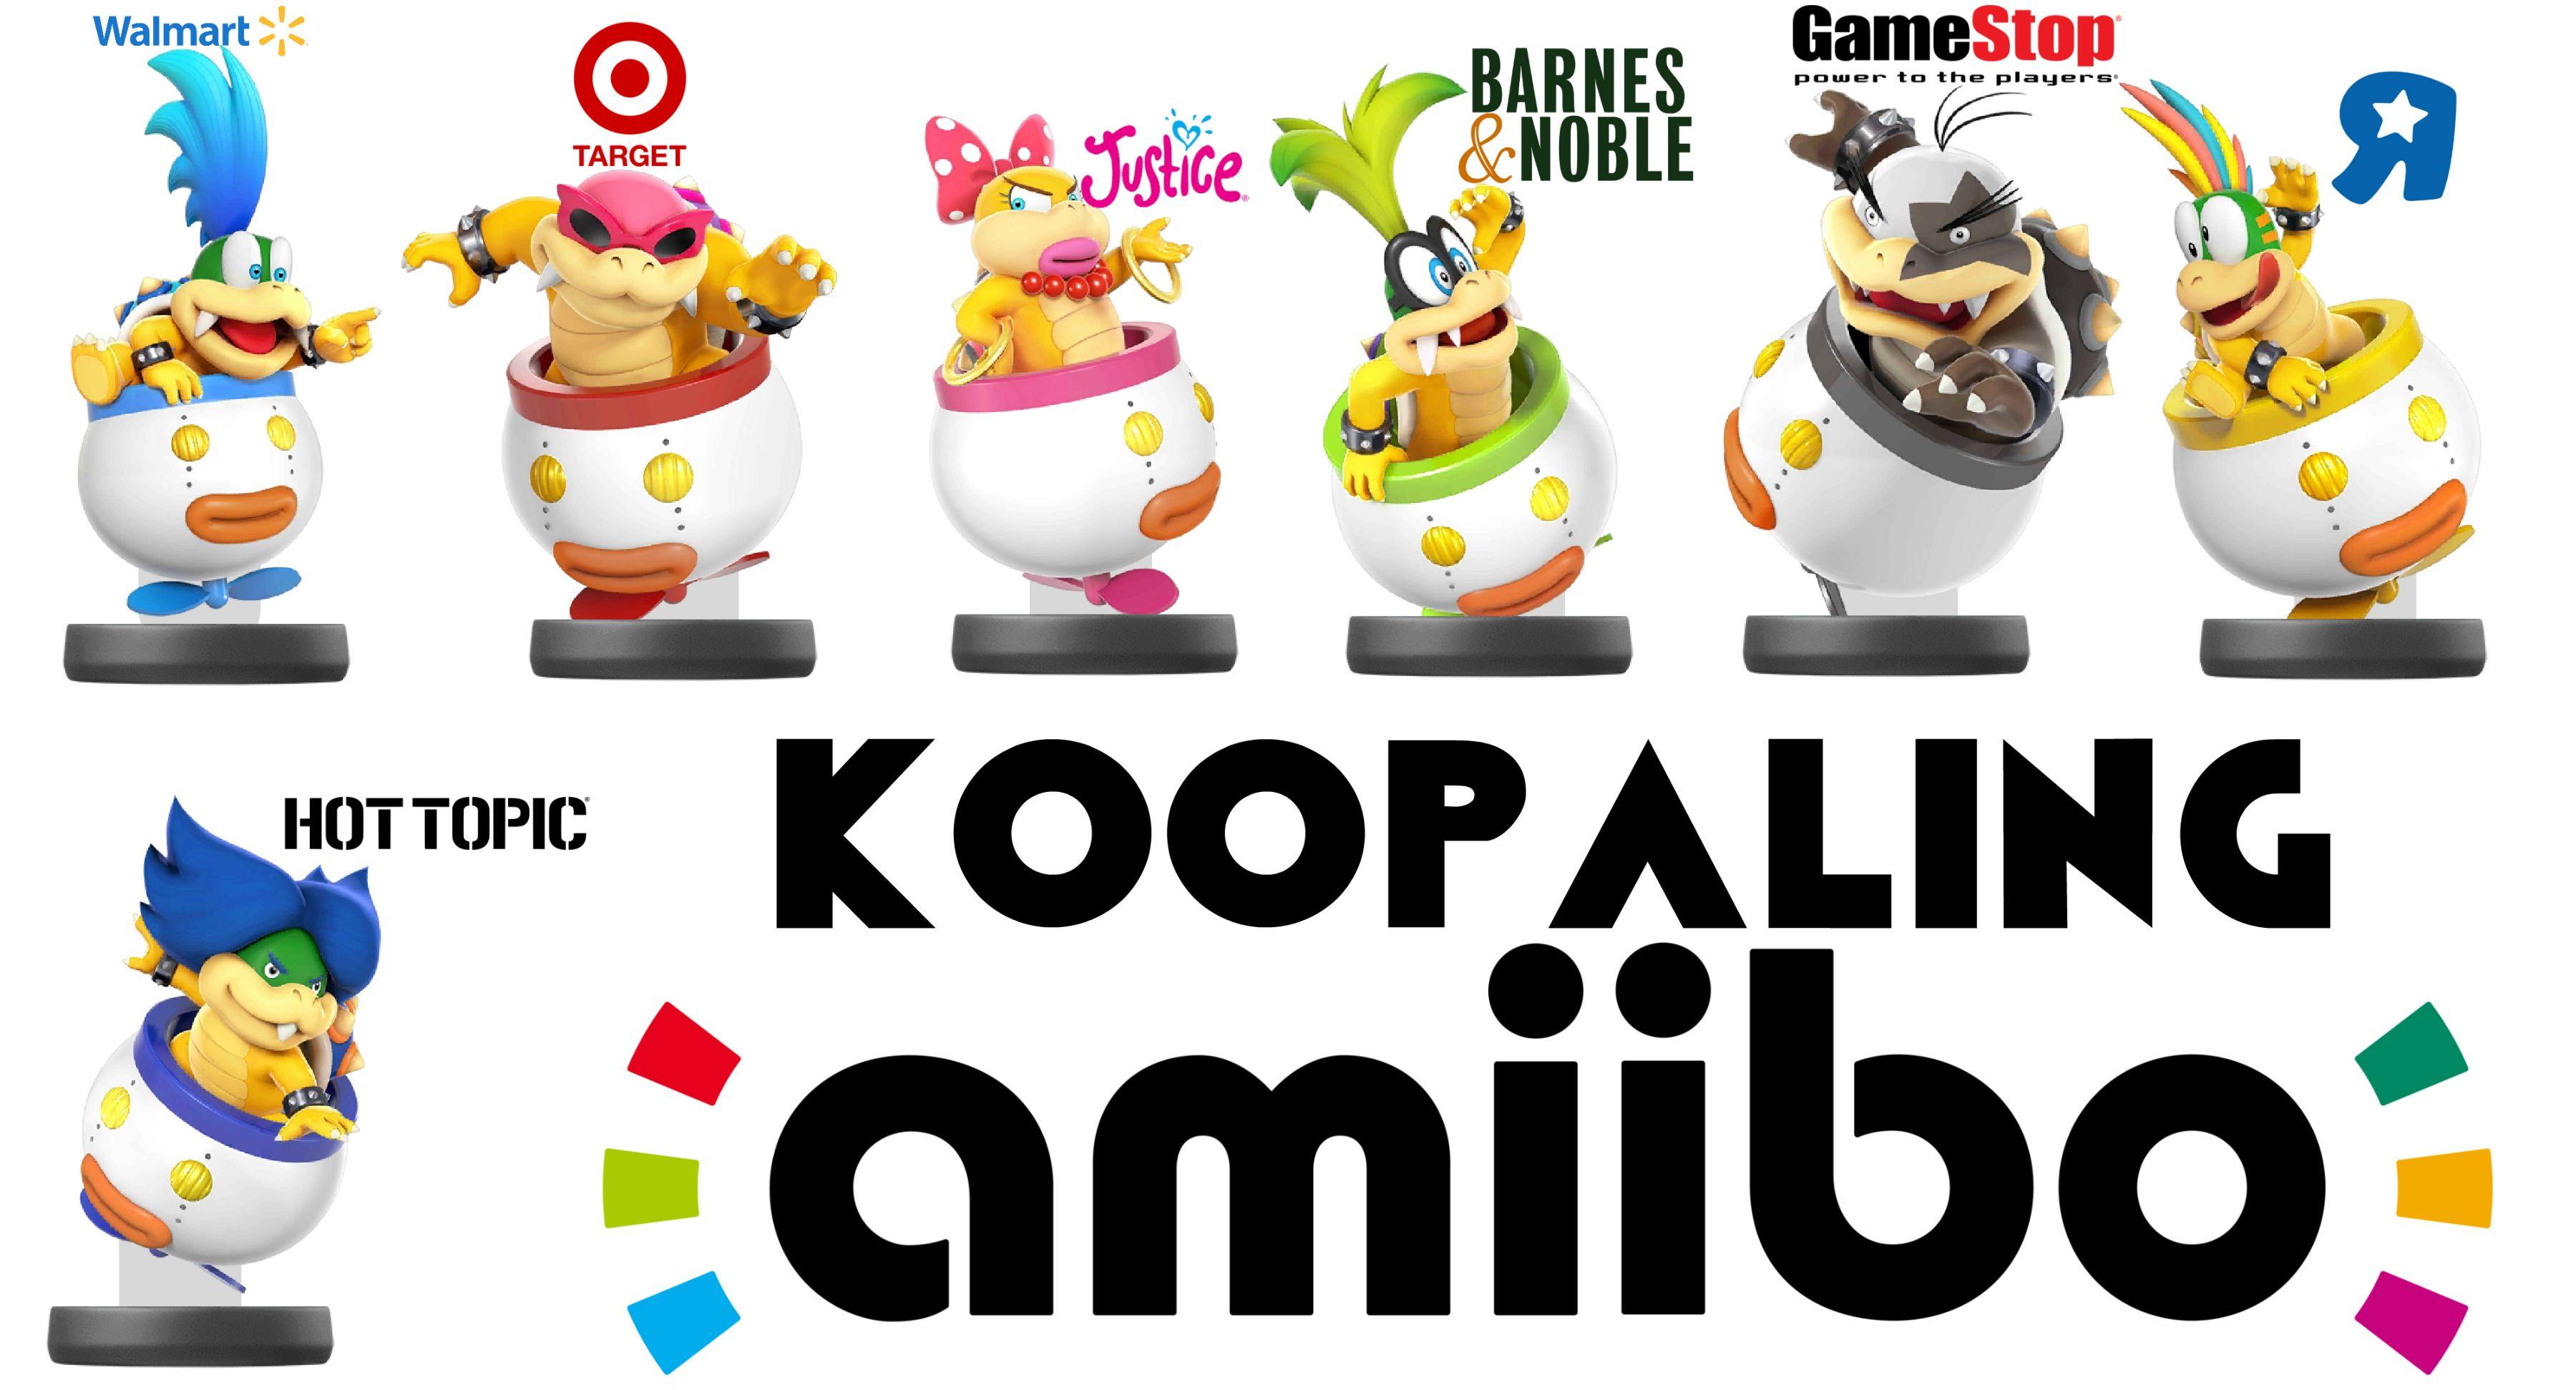 Koopalings Logo - Introducing the new Koopaling amiibo : amiibo